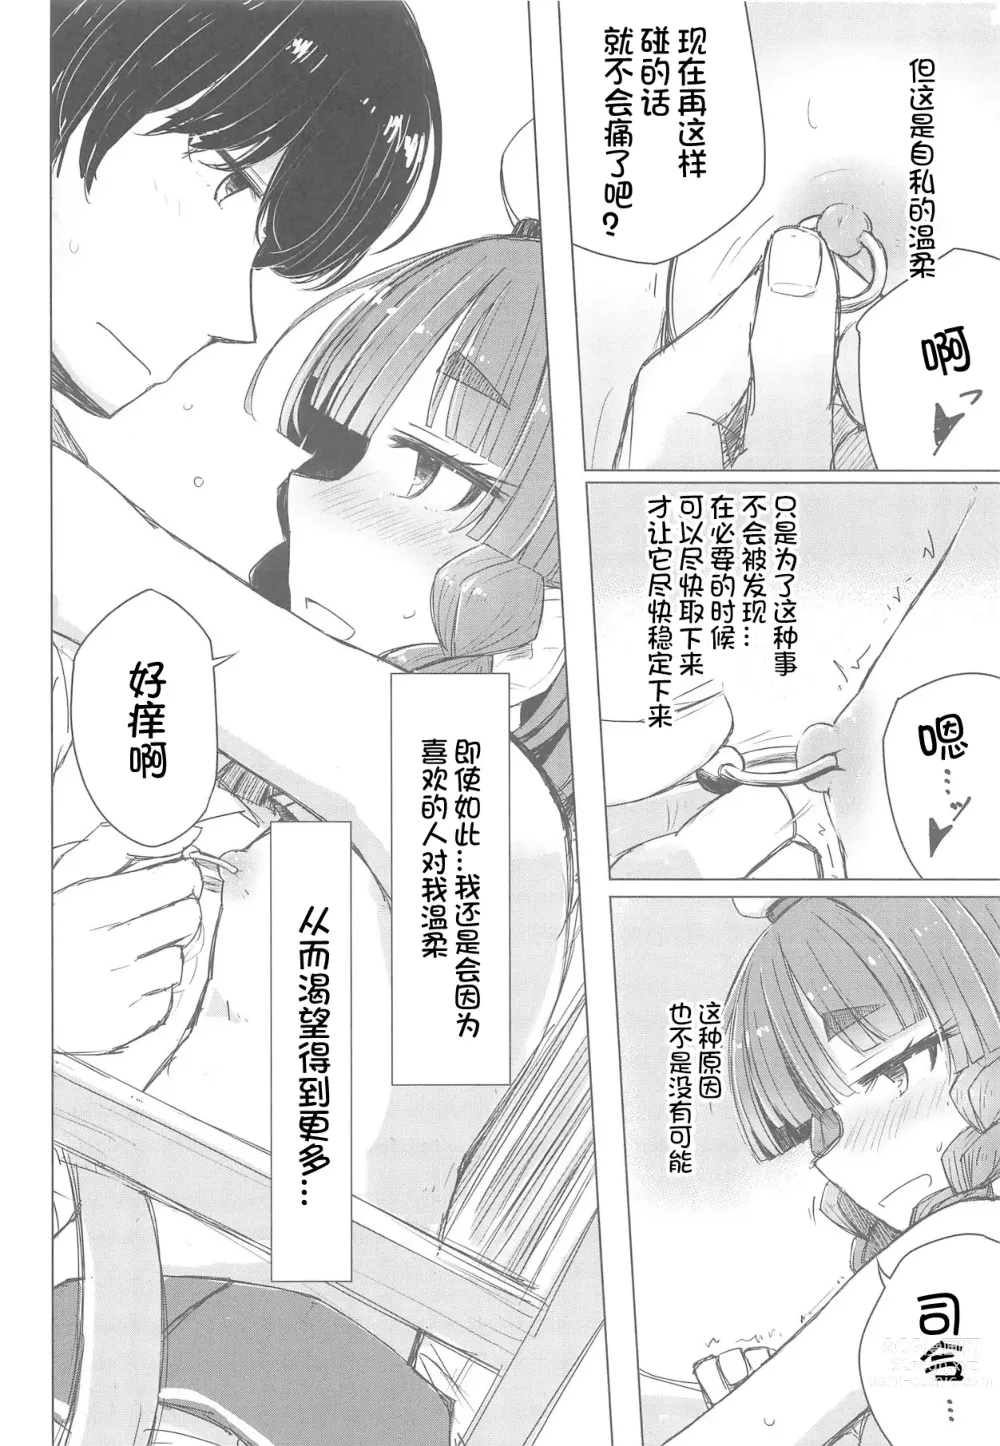 Page 8 of doujinshi Piercing Etorofu